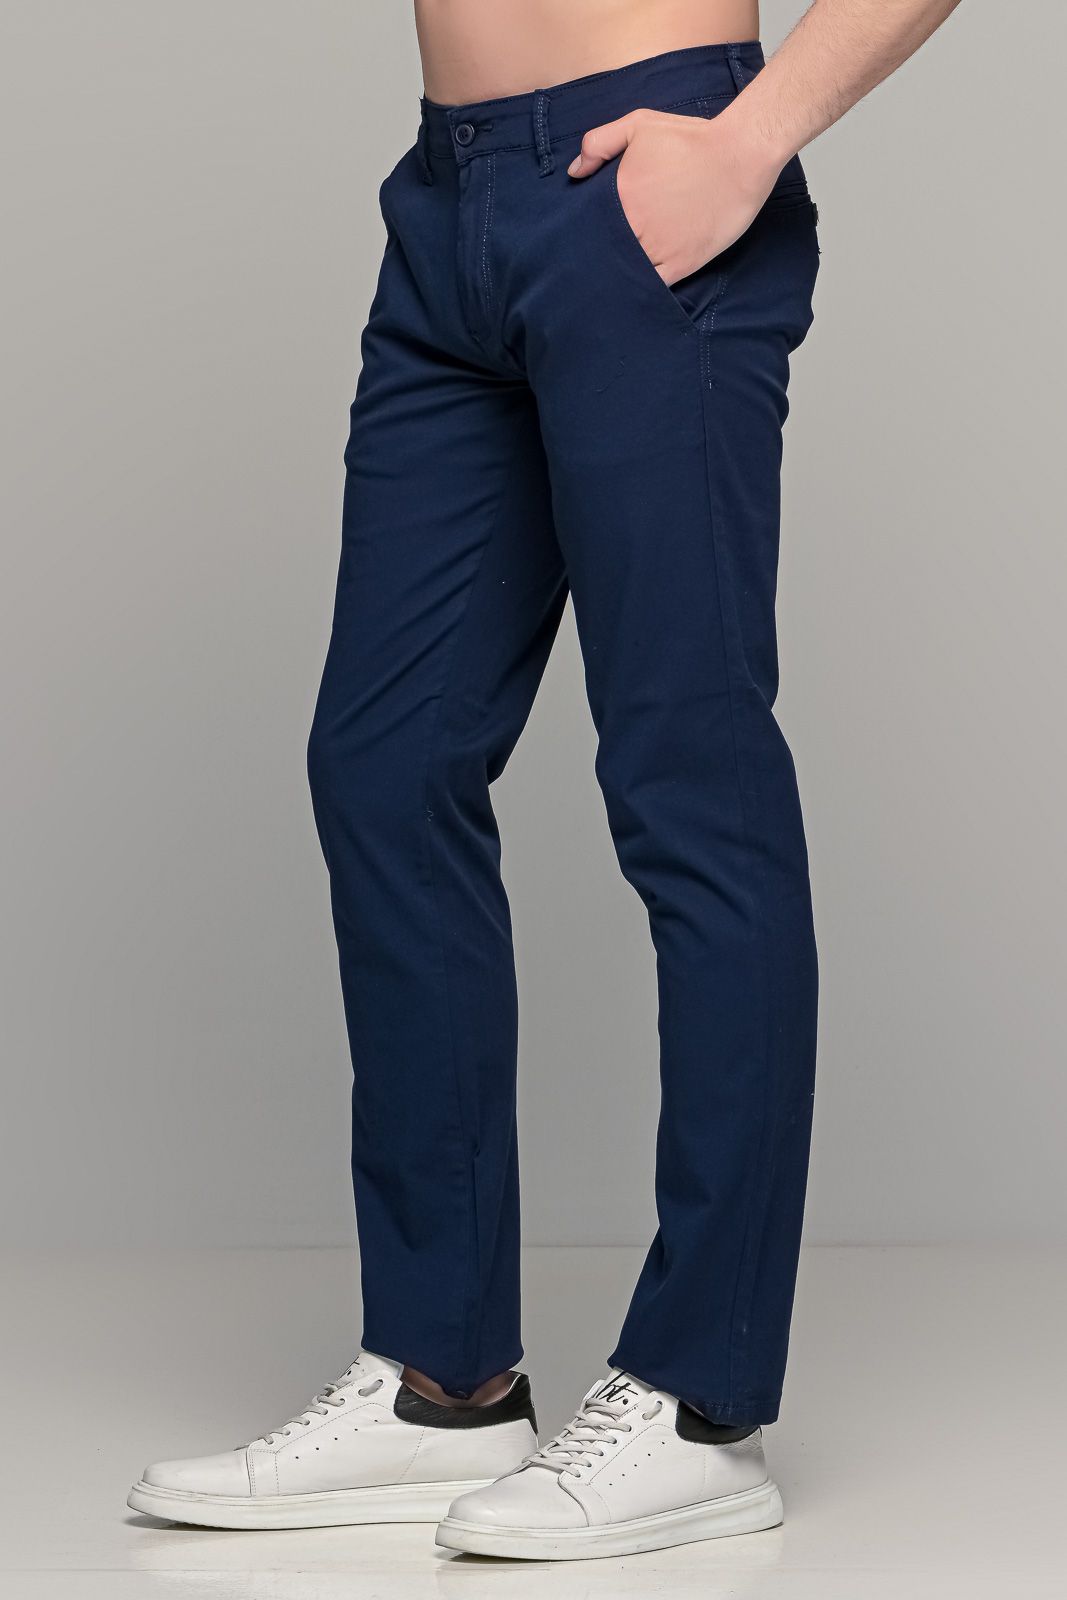 Καλοκαιρινό ανδρικό chino παντελόνι MASSARO μπλε - Slim fit